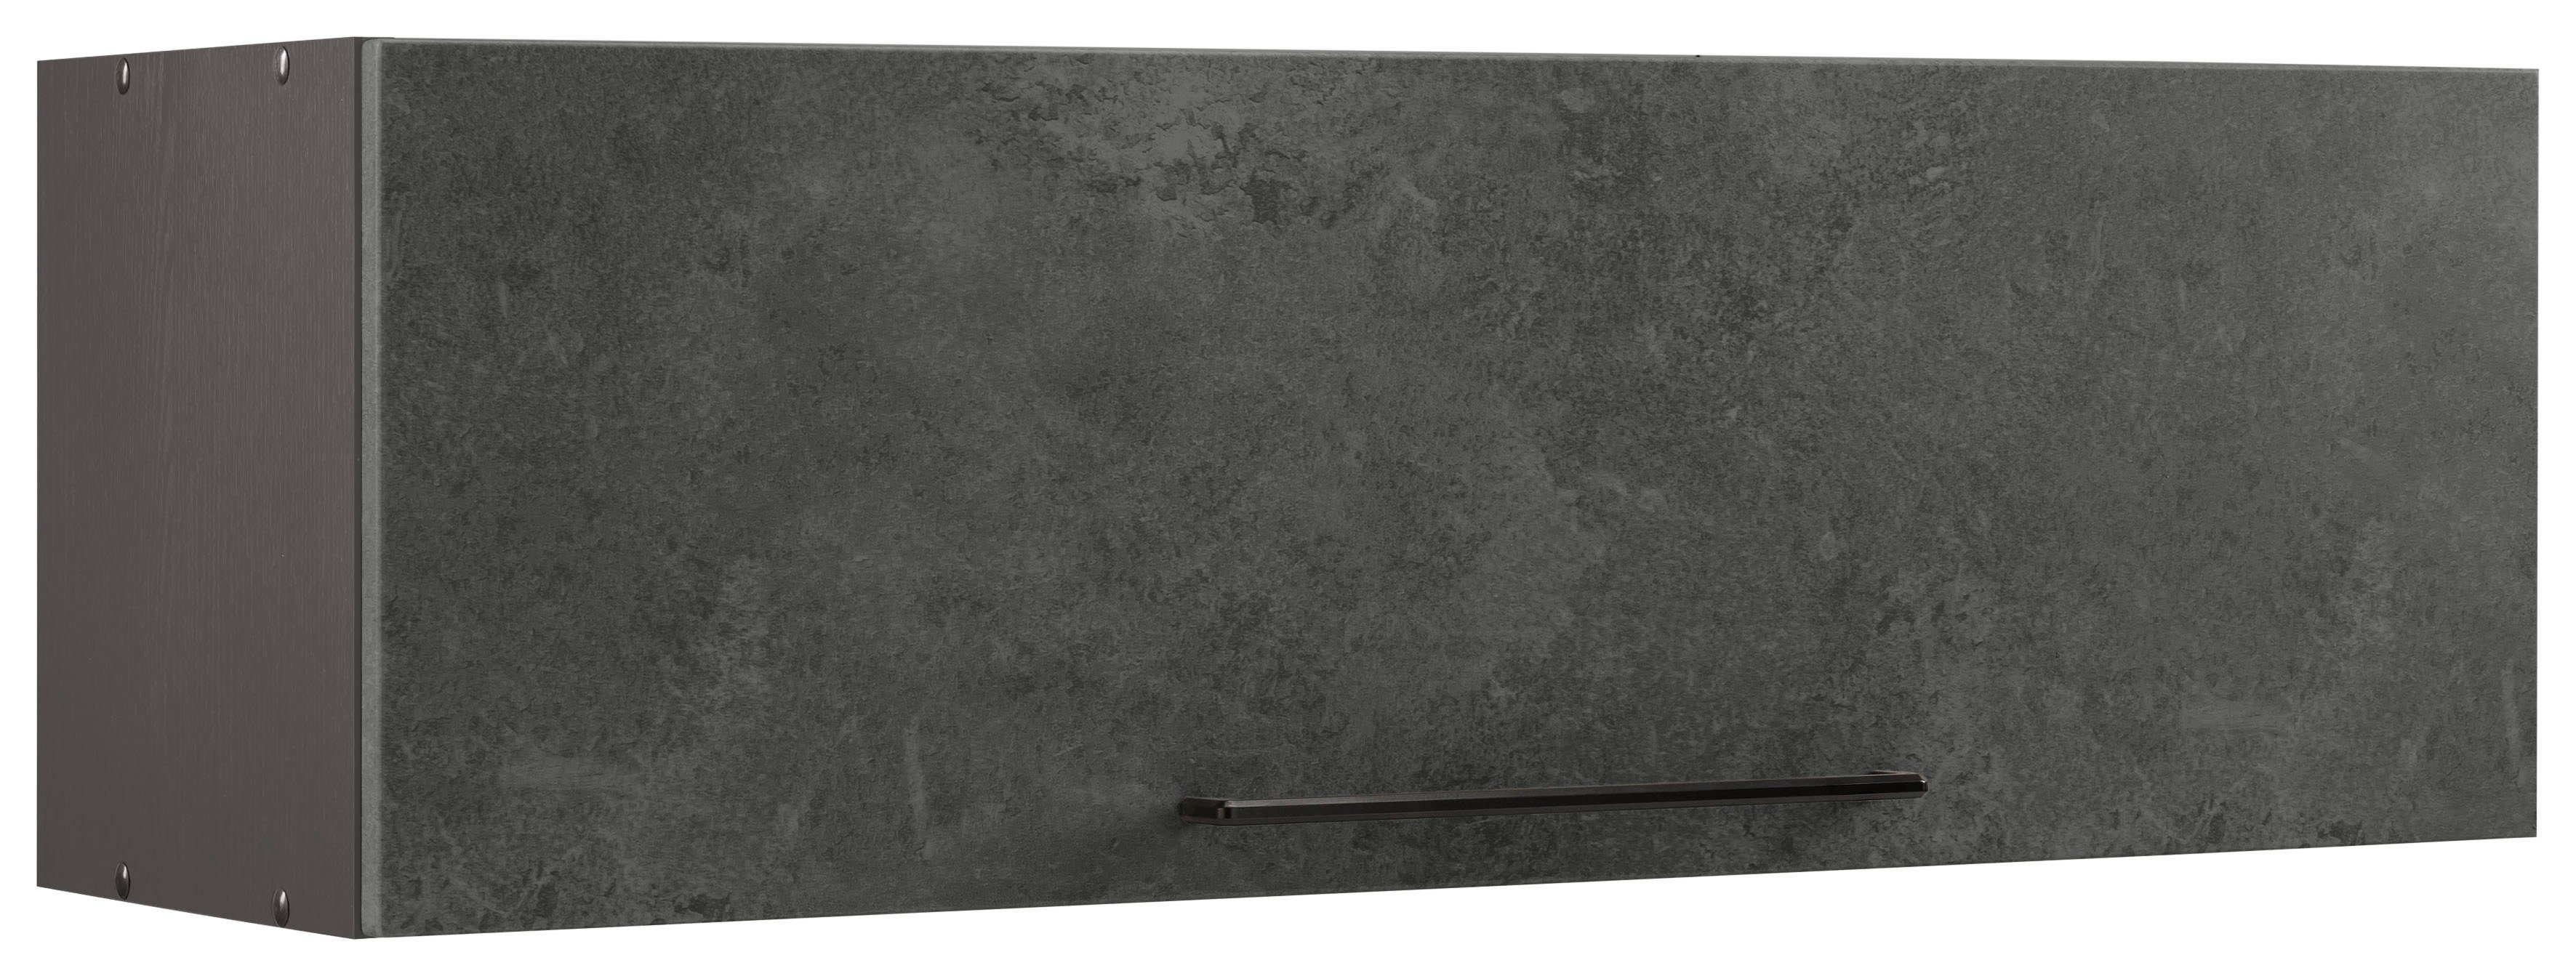 HELD MÖBEL Klapphängeschrank Tulsa 100 cm breit, mit 1 Klappe, schwarzer  Metallgriff, MDF Front